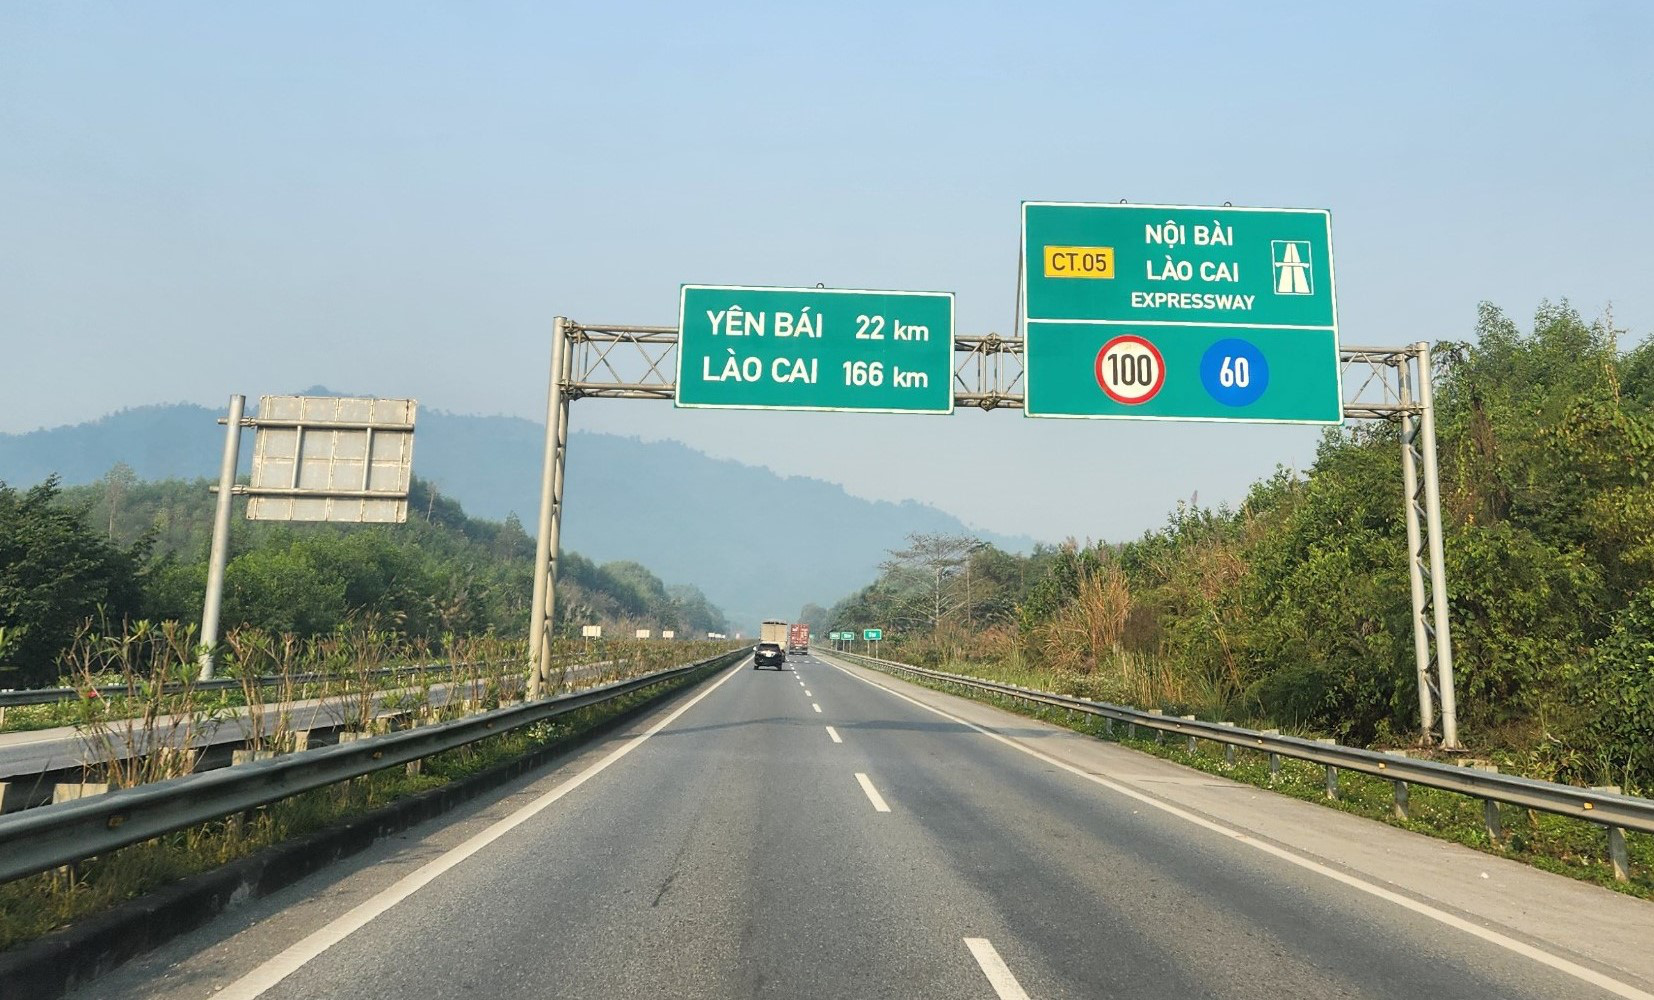 Cao tốc Nội Bài - Lào Cai dài 254km, trong đó gần 83km có 2 làn xe, tốc độ 80km/h, còn lại là 4 làn xe tốc độ 100km/h - Ảnh: TUẤN PHÙNG